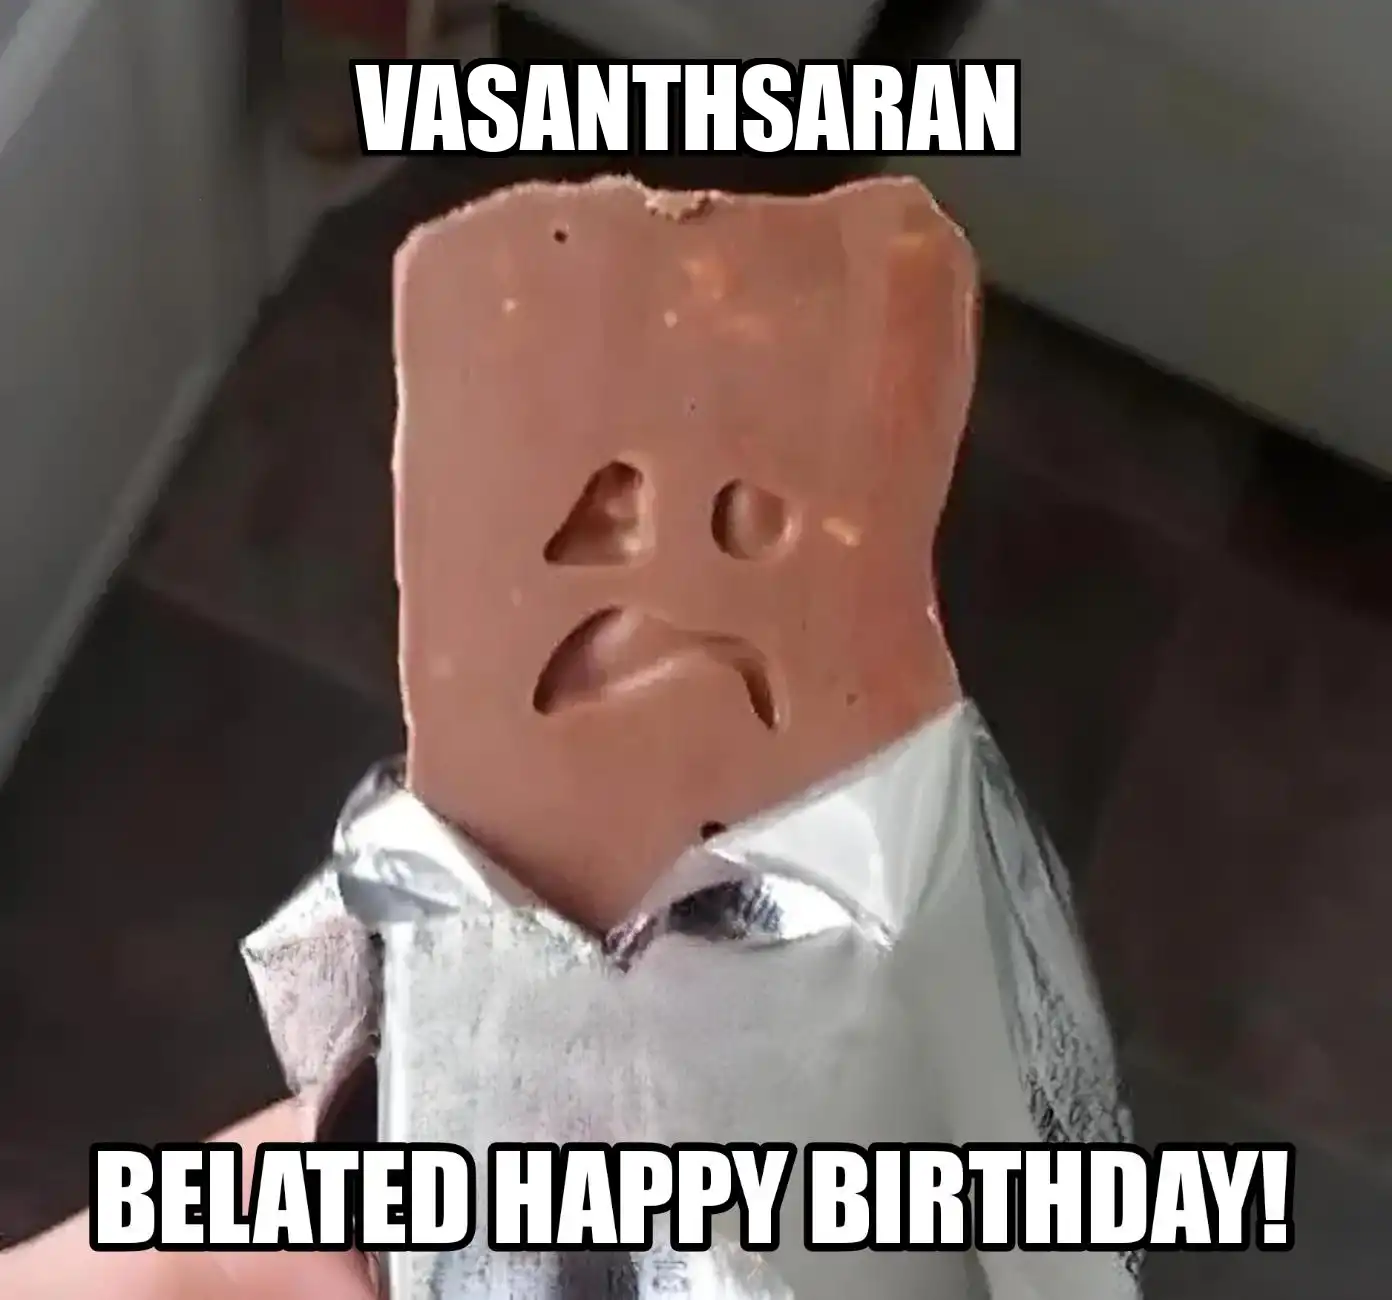 Happy Birthday Vasanthsaran Belated Happy Birthday Meme